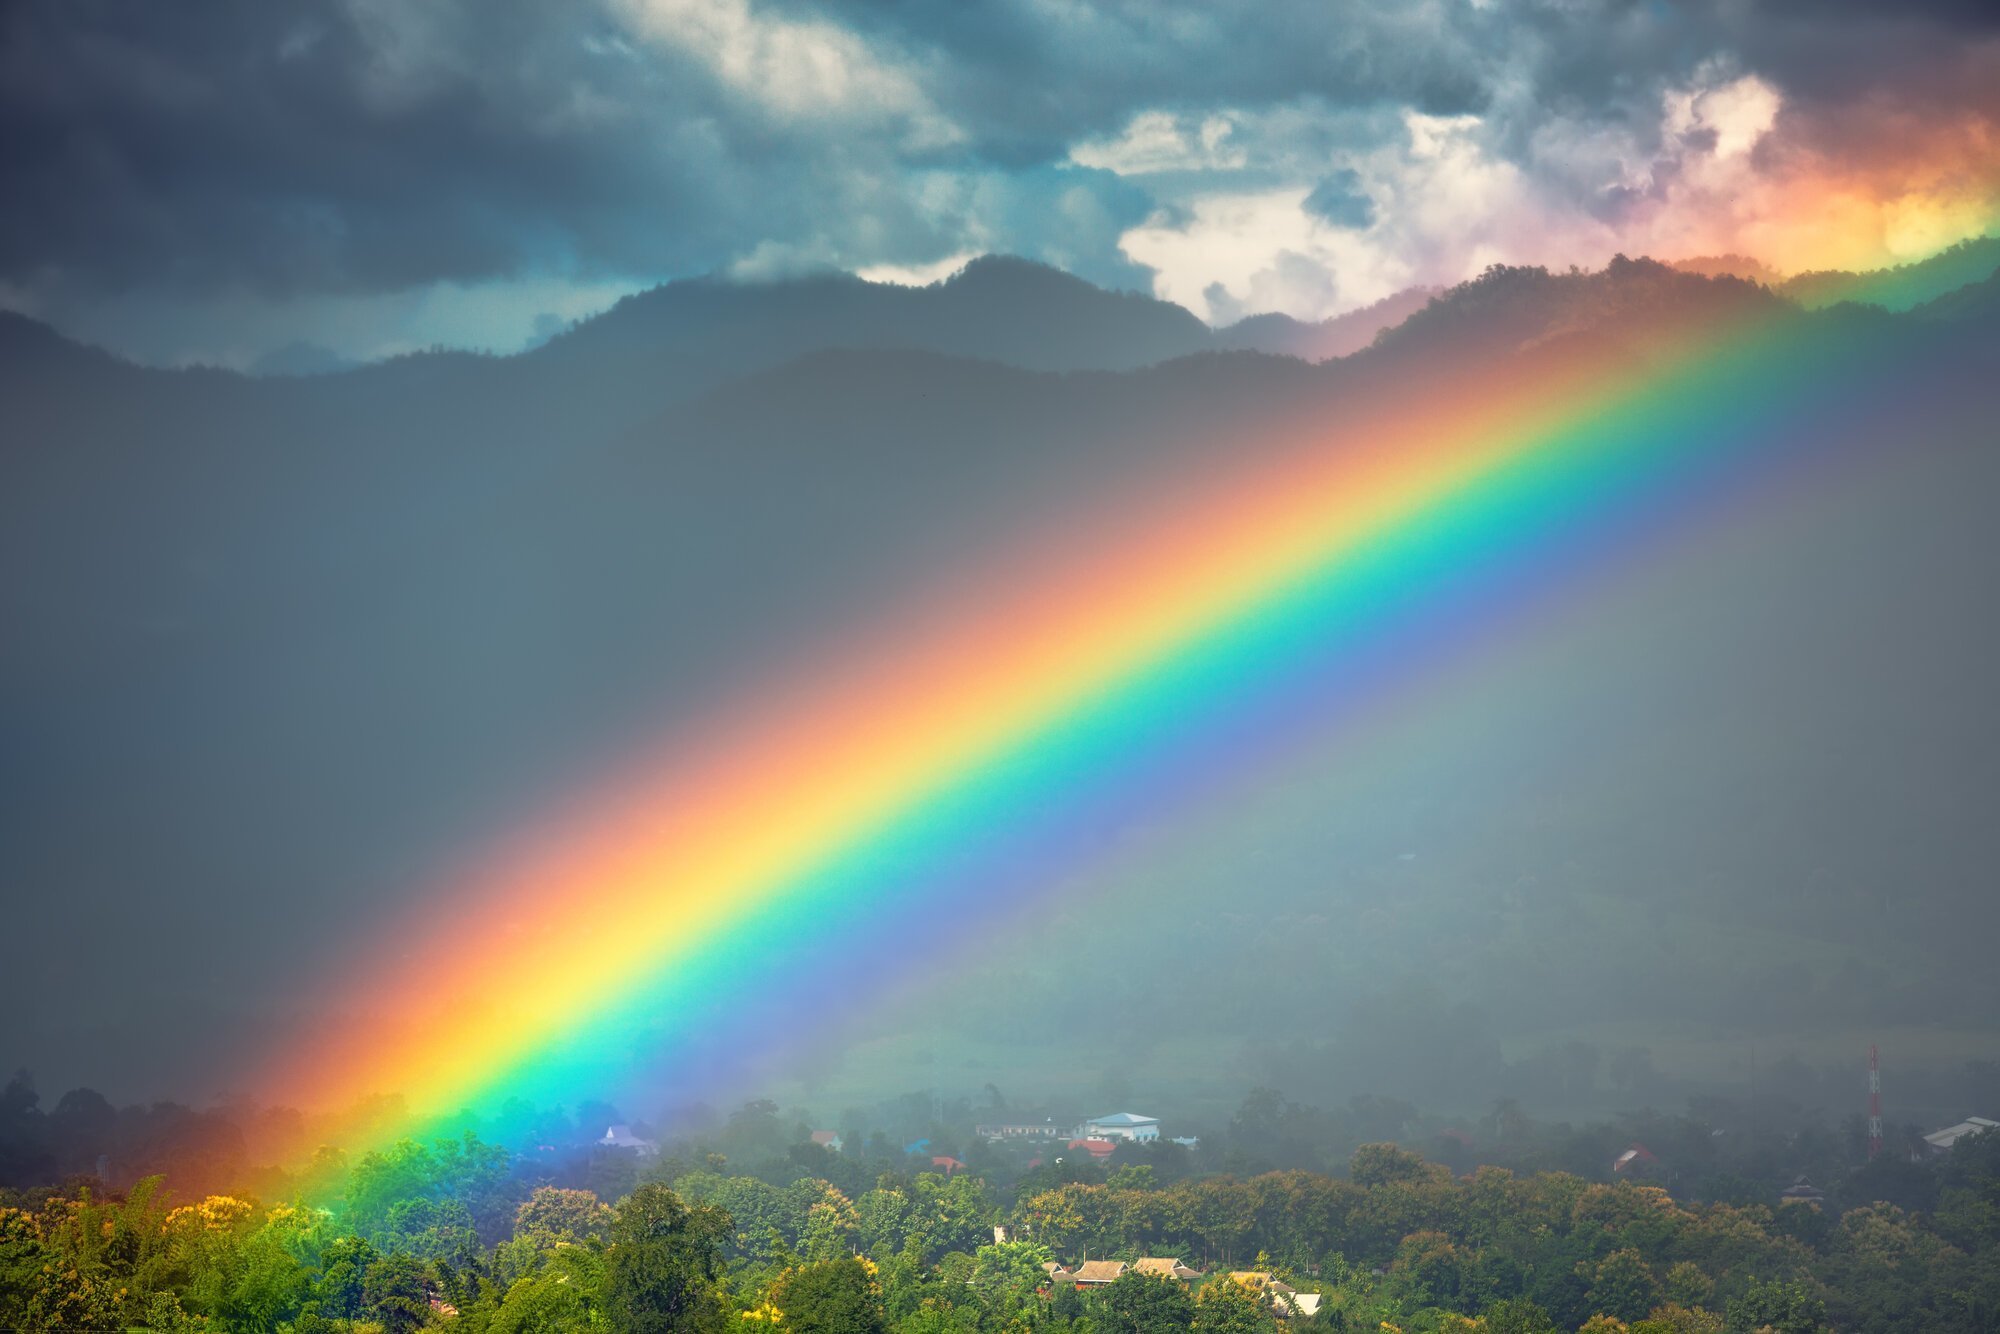  Soñar con un arco iris: 13 SUEÑOS explicados con sus MISCELÁNEOS significados